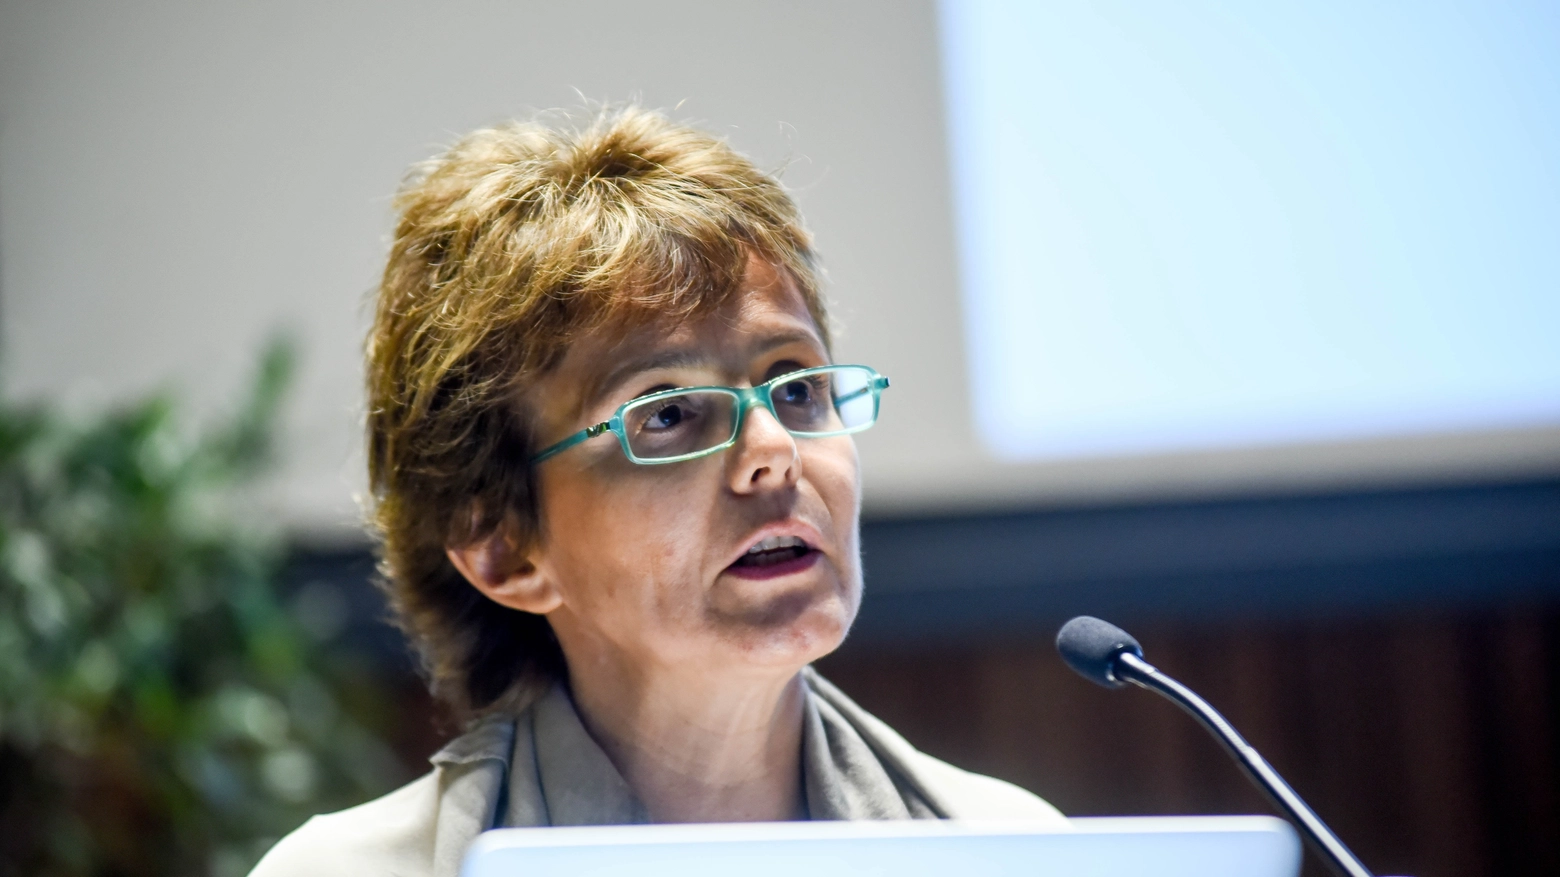 Senatrice Elena Cattaneo